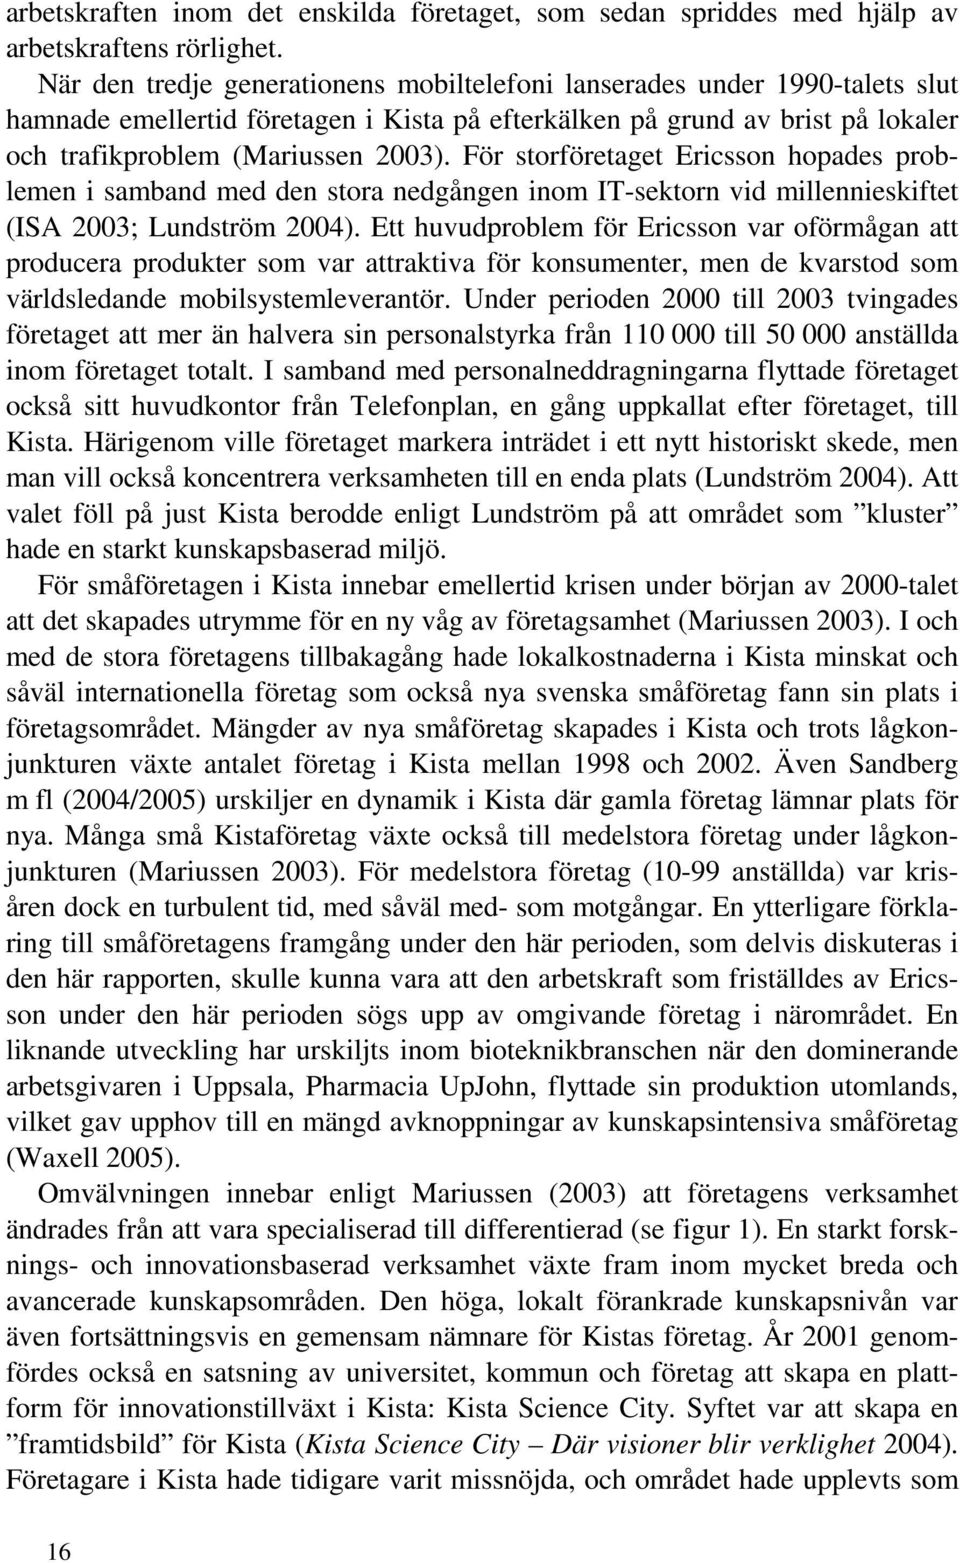 För storföretaget Ericsson hopades problemen i samband med den stora nedgången inom IT-sektorn vid millennieskiftet (ISA 2003; Lundström 2004).